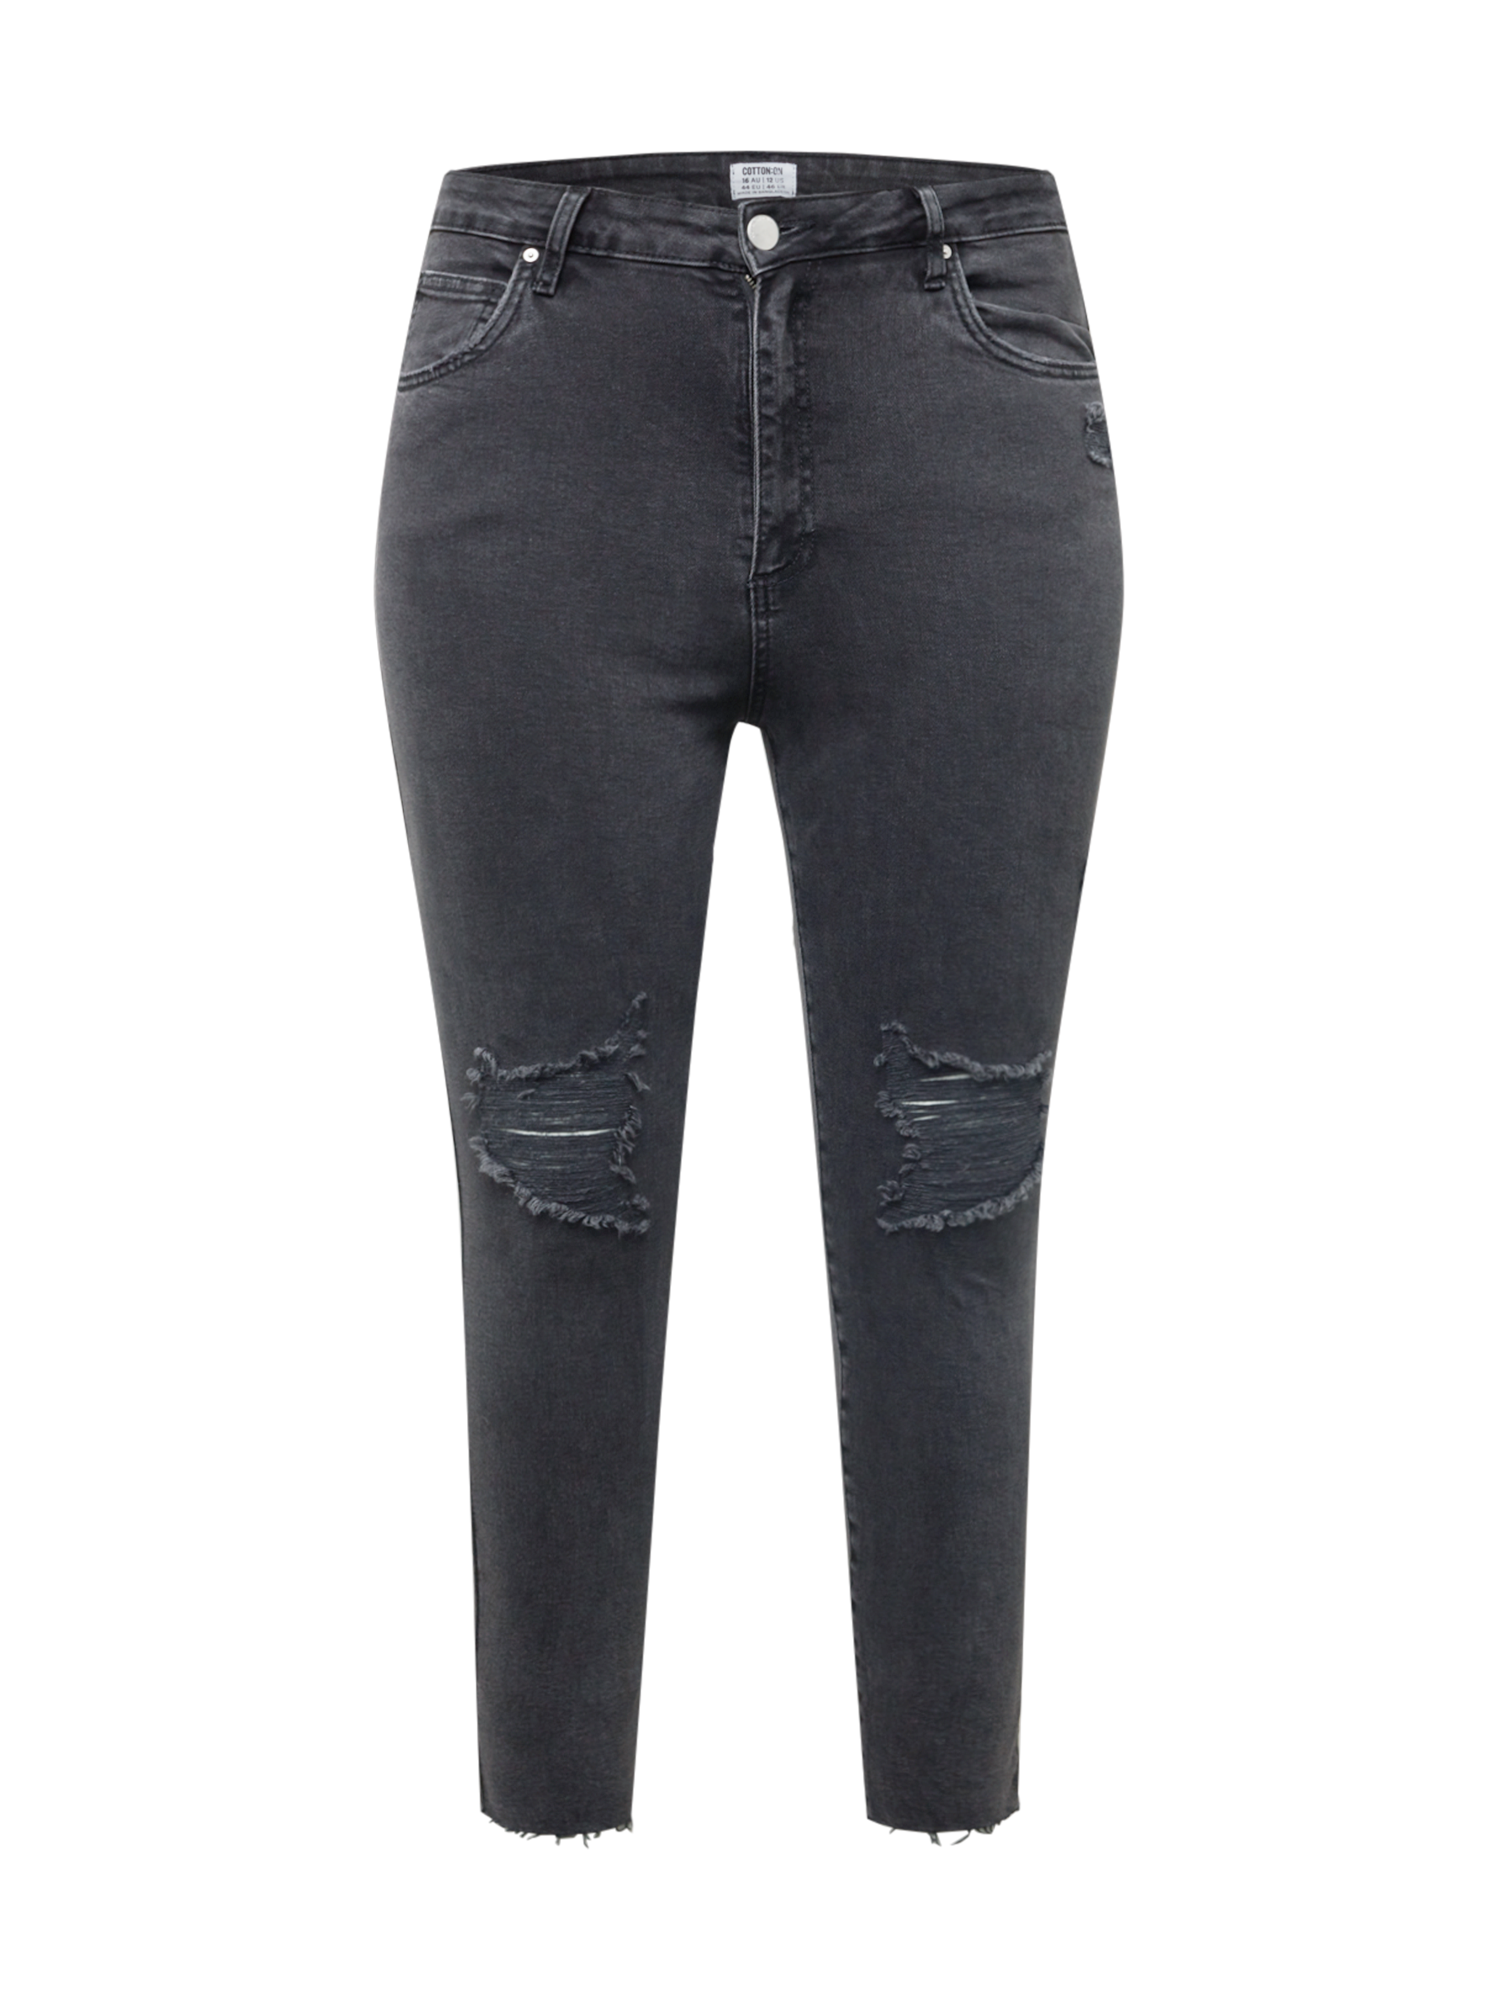 Odzież Kobiety Cotton On Curve Jeansy Adriana w kolorze Czarnym 